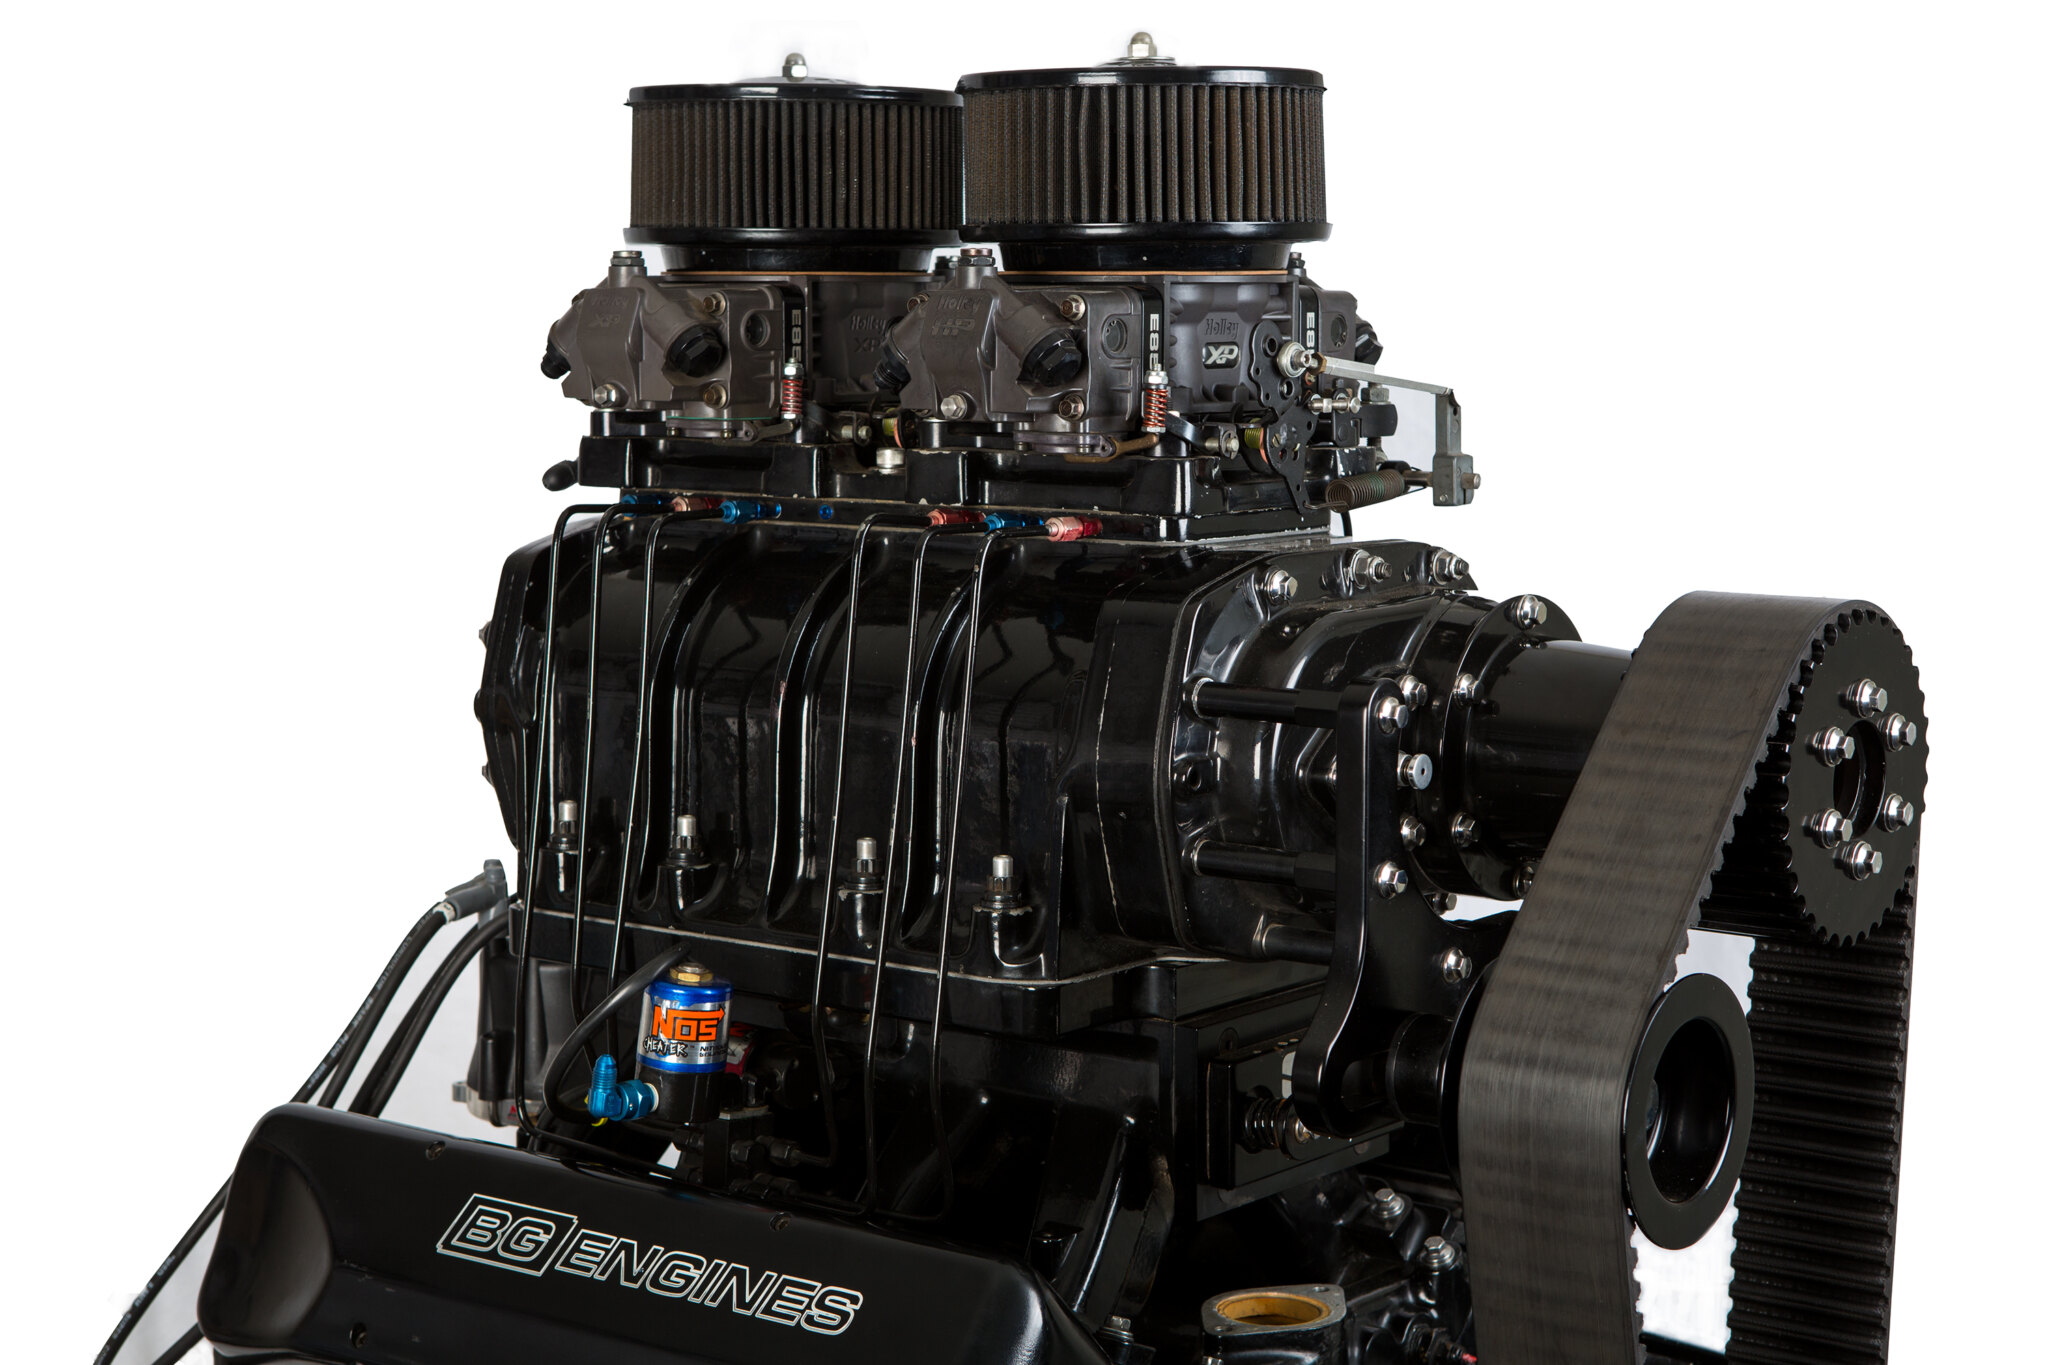 BG Engines blown 355ci Holden V8 combo